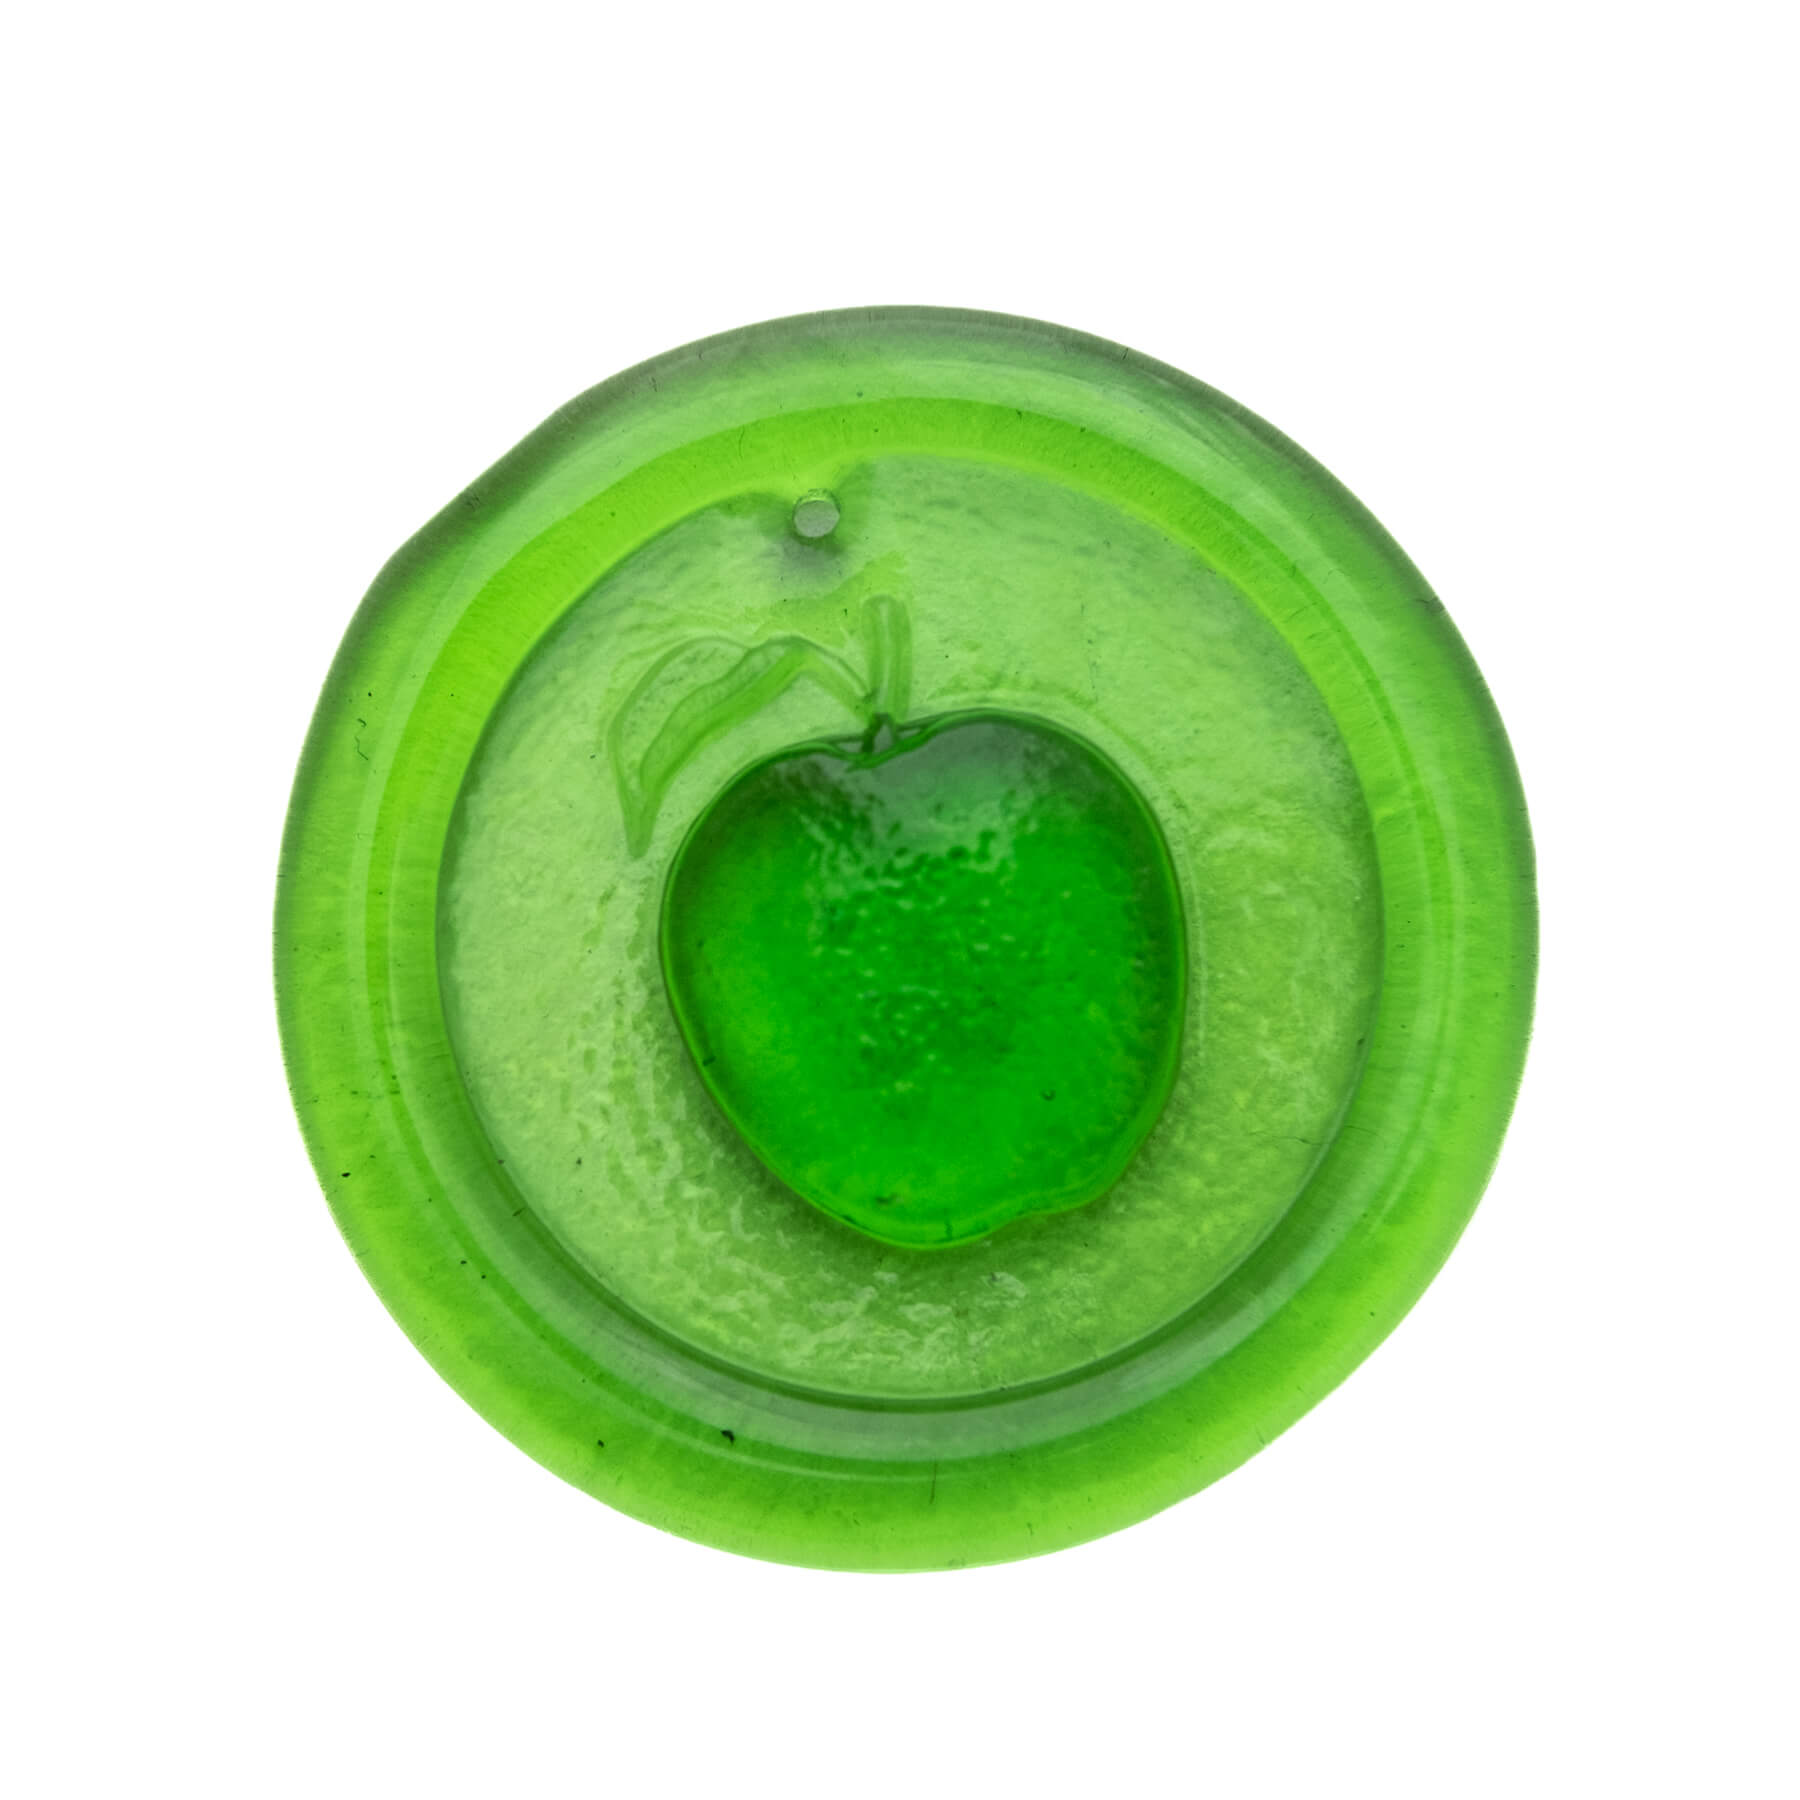 Product photo for Blenko 3" 'Apple' Suncatcher - Olive